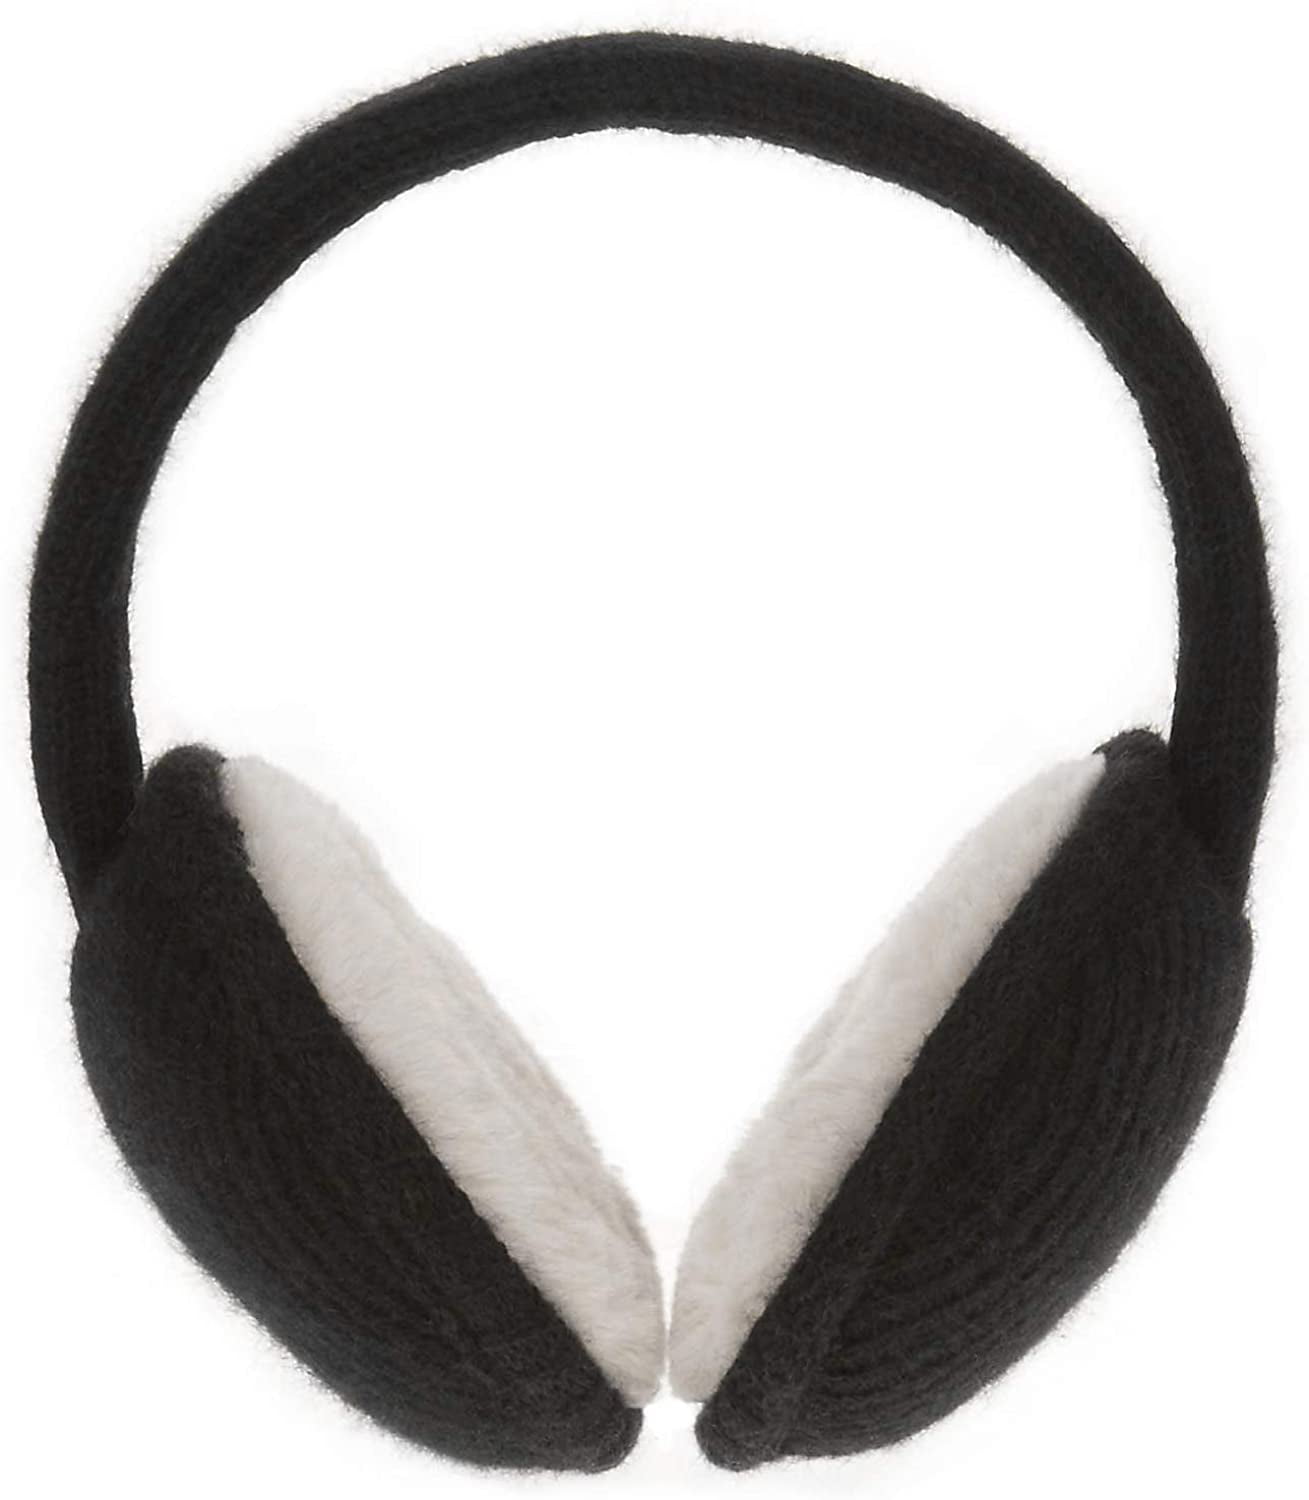 Knolee Unisex Ear Warmers Classic Knit Earmuffs Foldable Ear Muffs Winter Accessory Outdoor EarMuffs 